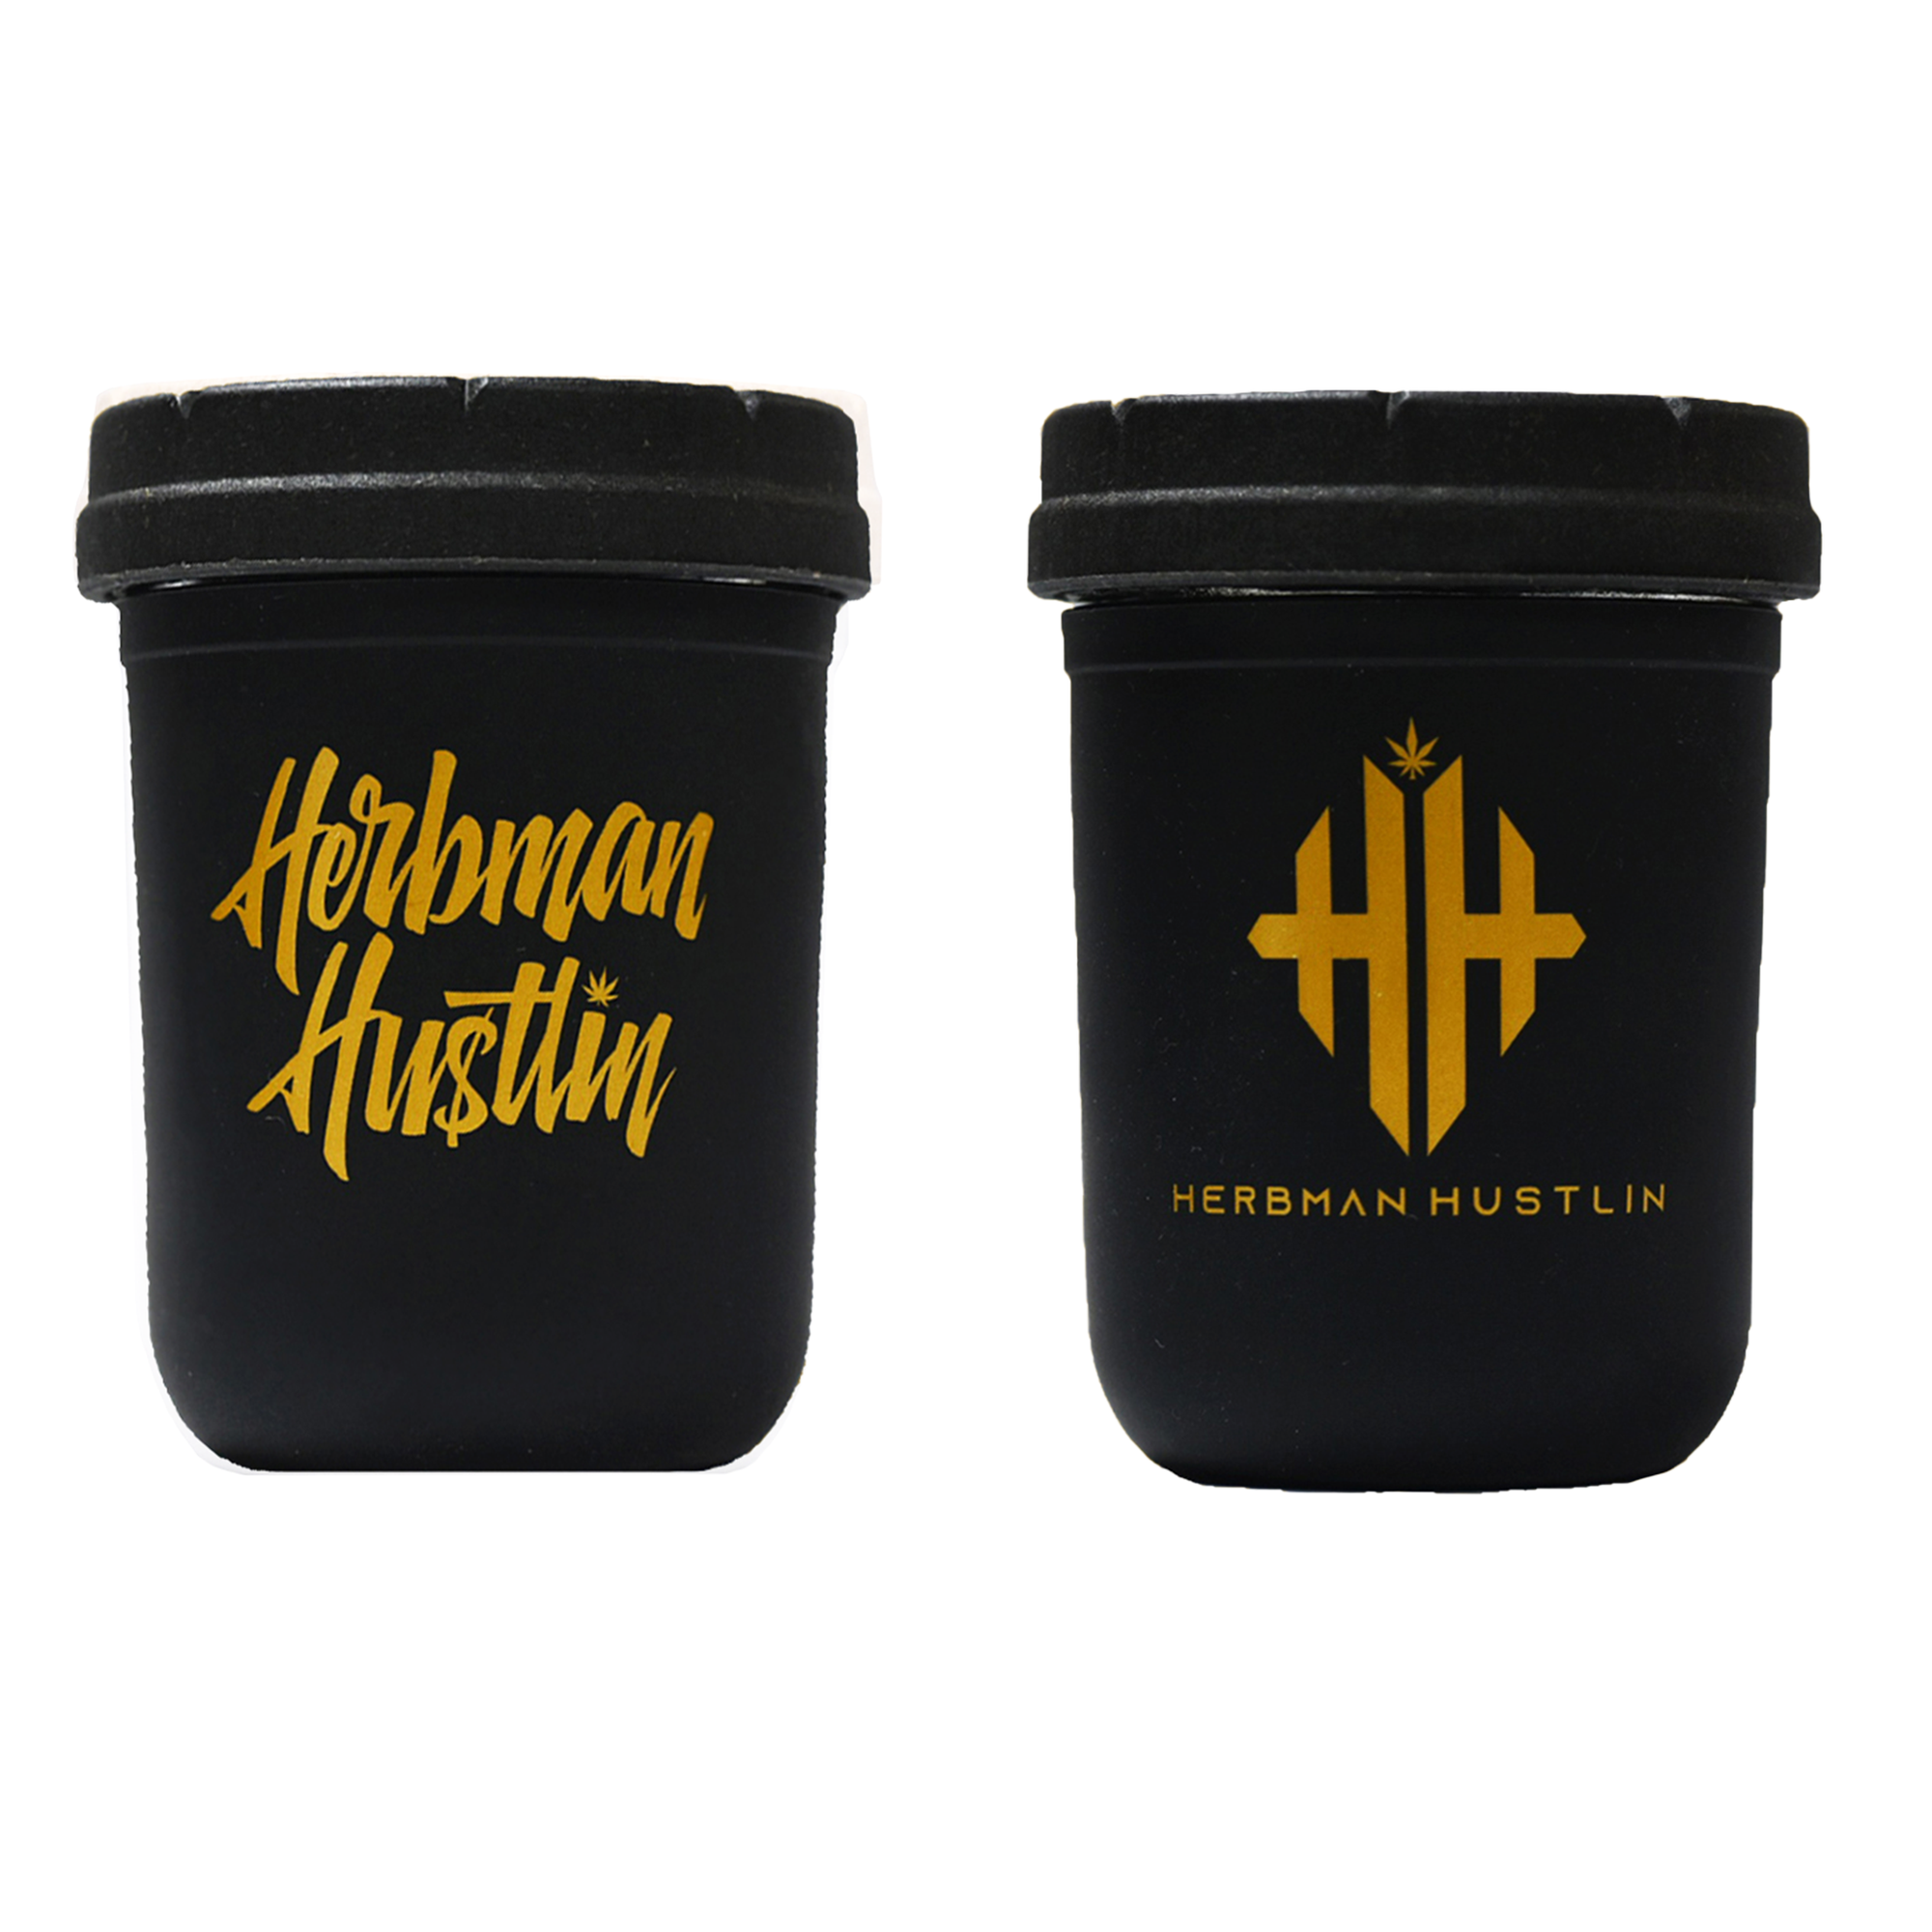 Herbman Hustlin 8oz Re-Stash Jar - Black/Gold